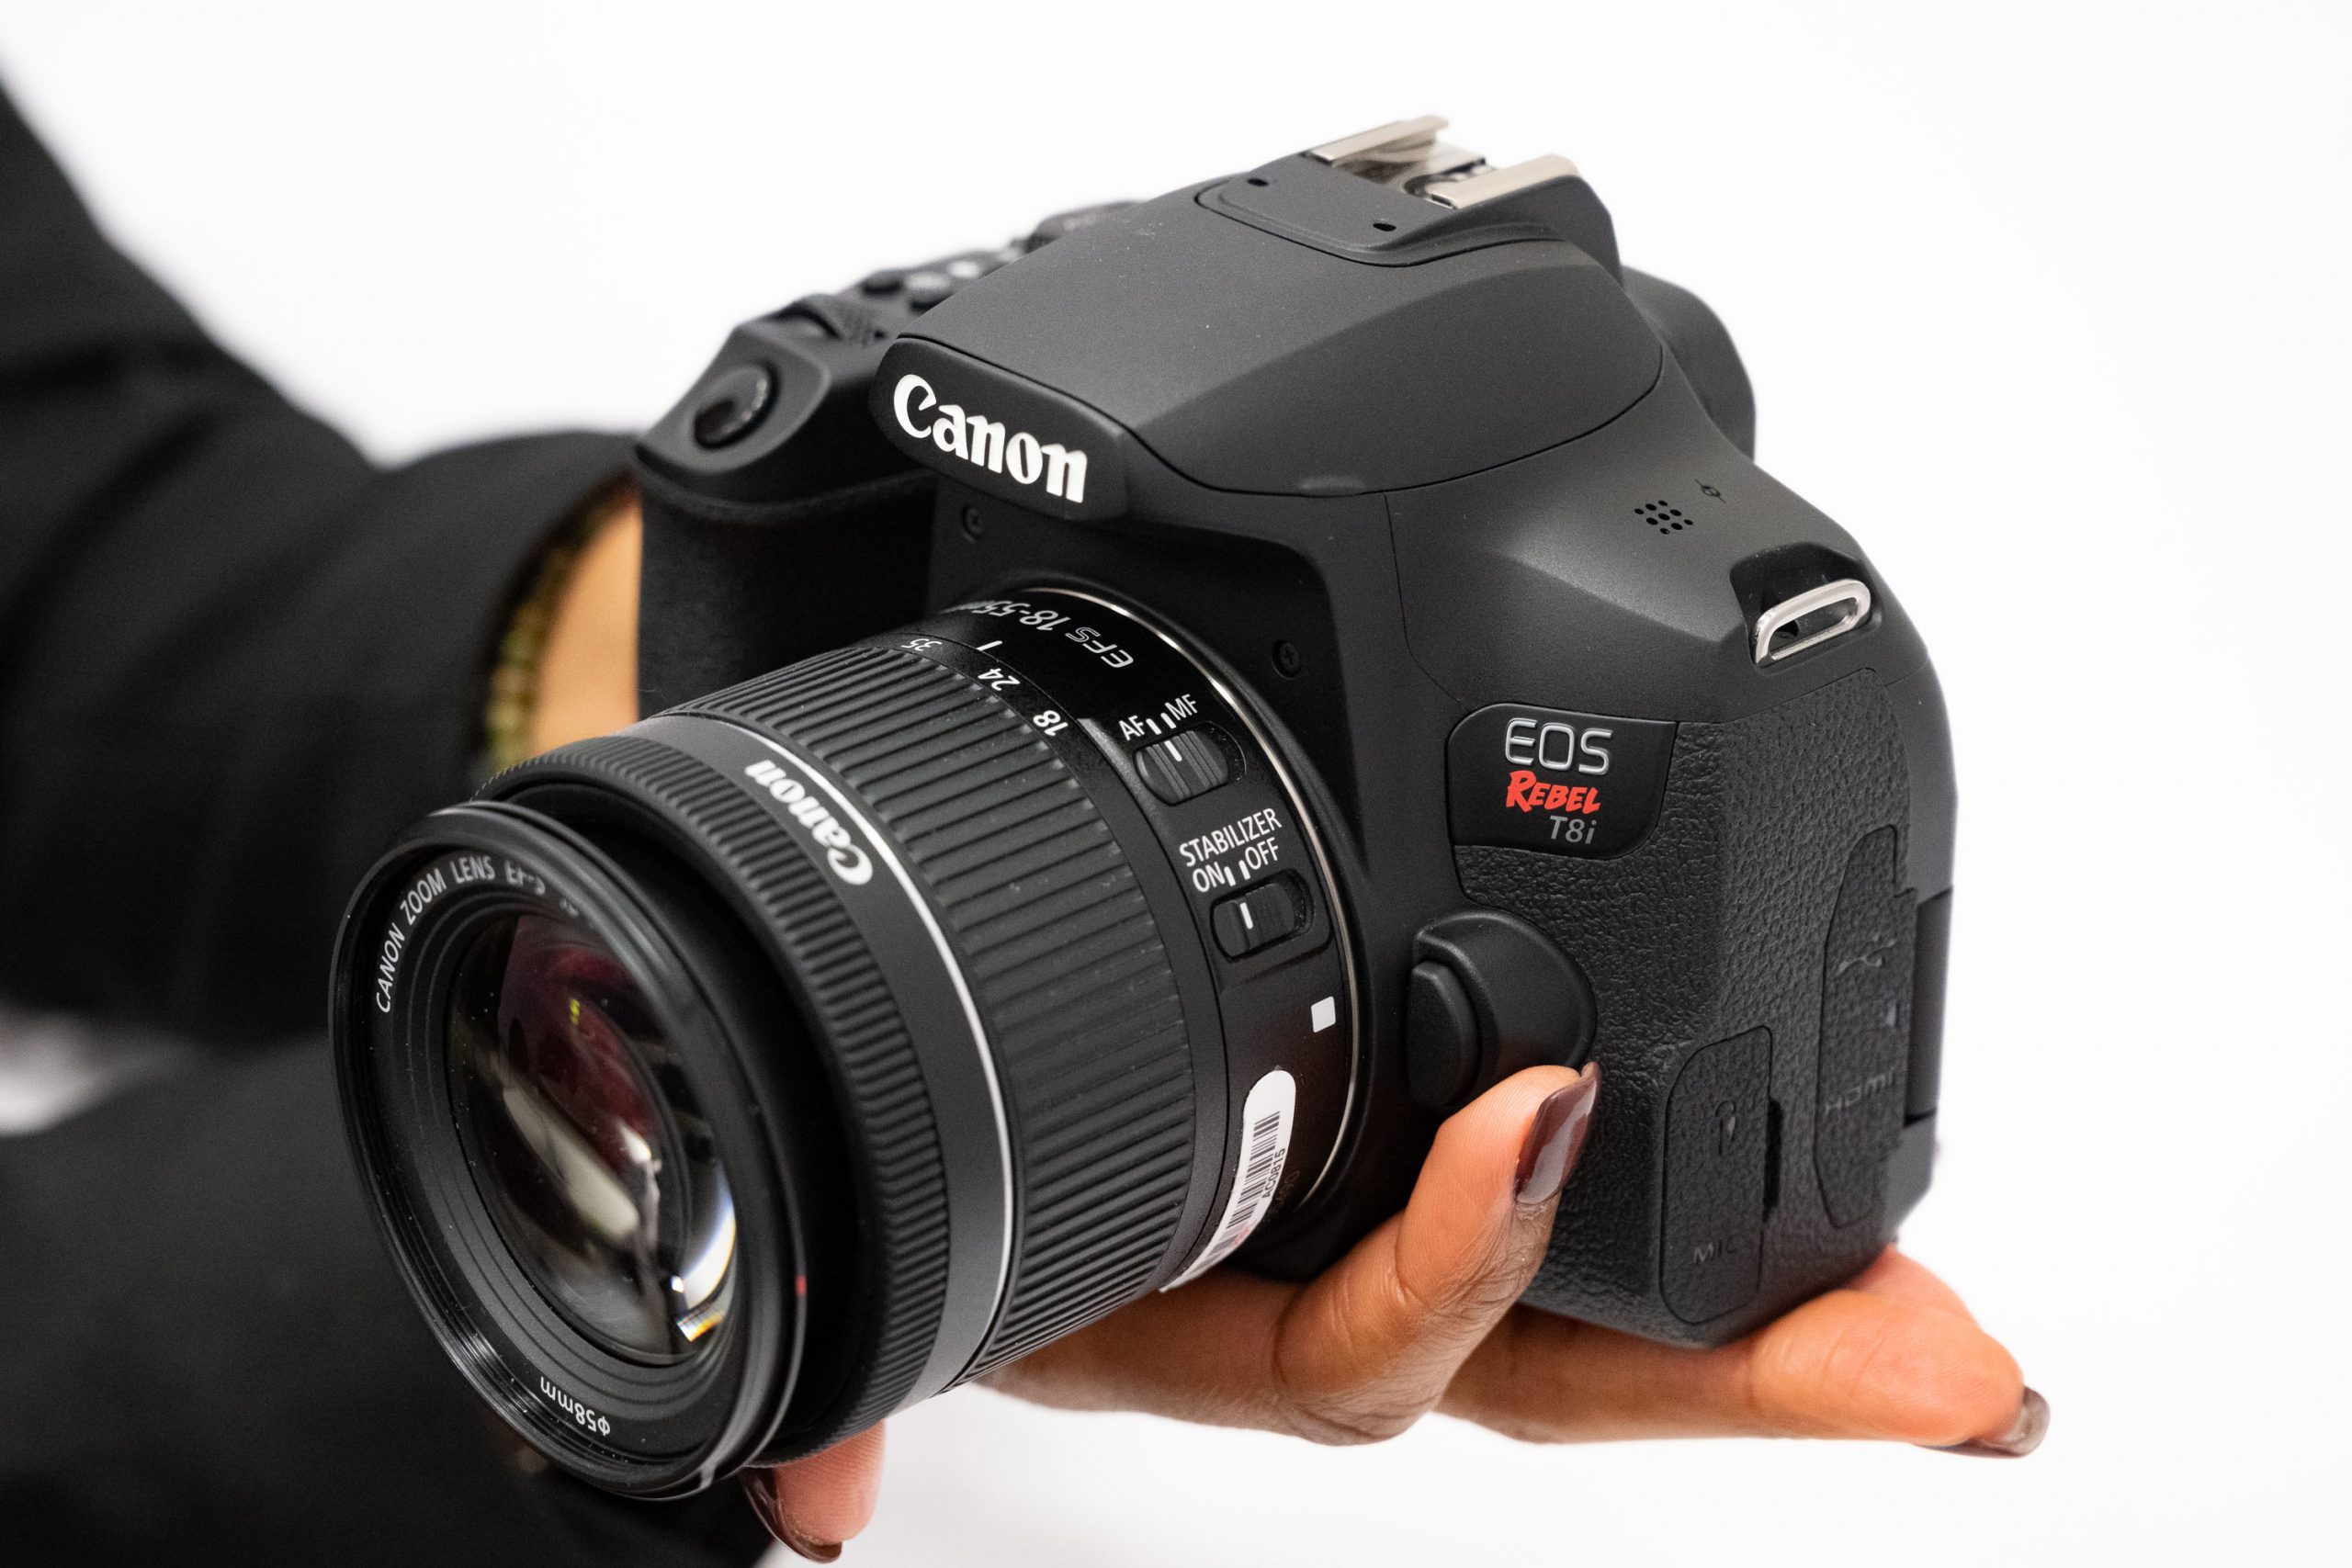 Canon giới thiệu Rebel T8i hay còn có tên là EOS 850D với nhiều tính năng hấp dẫn đối đầu với dòng máy mirrorless